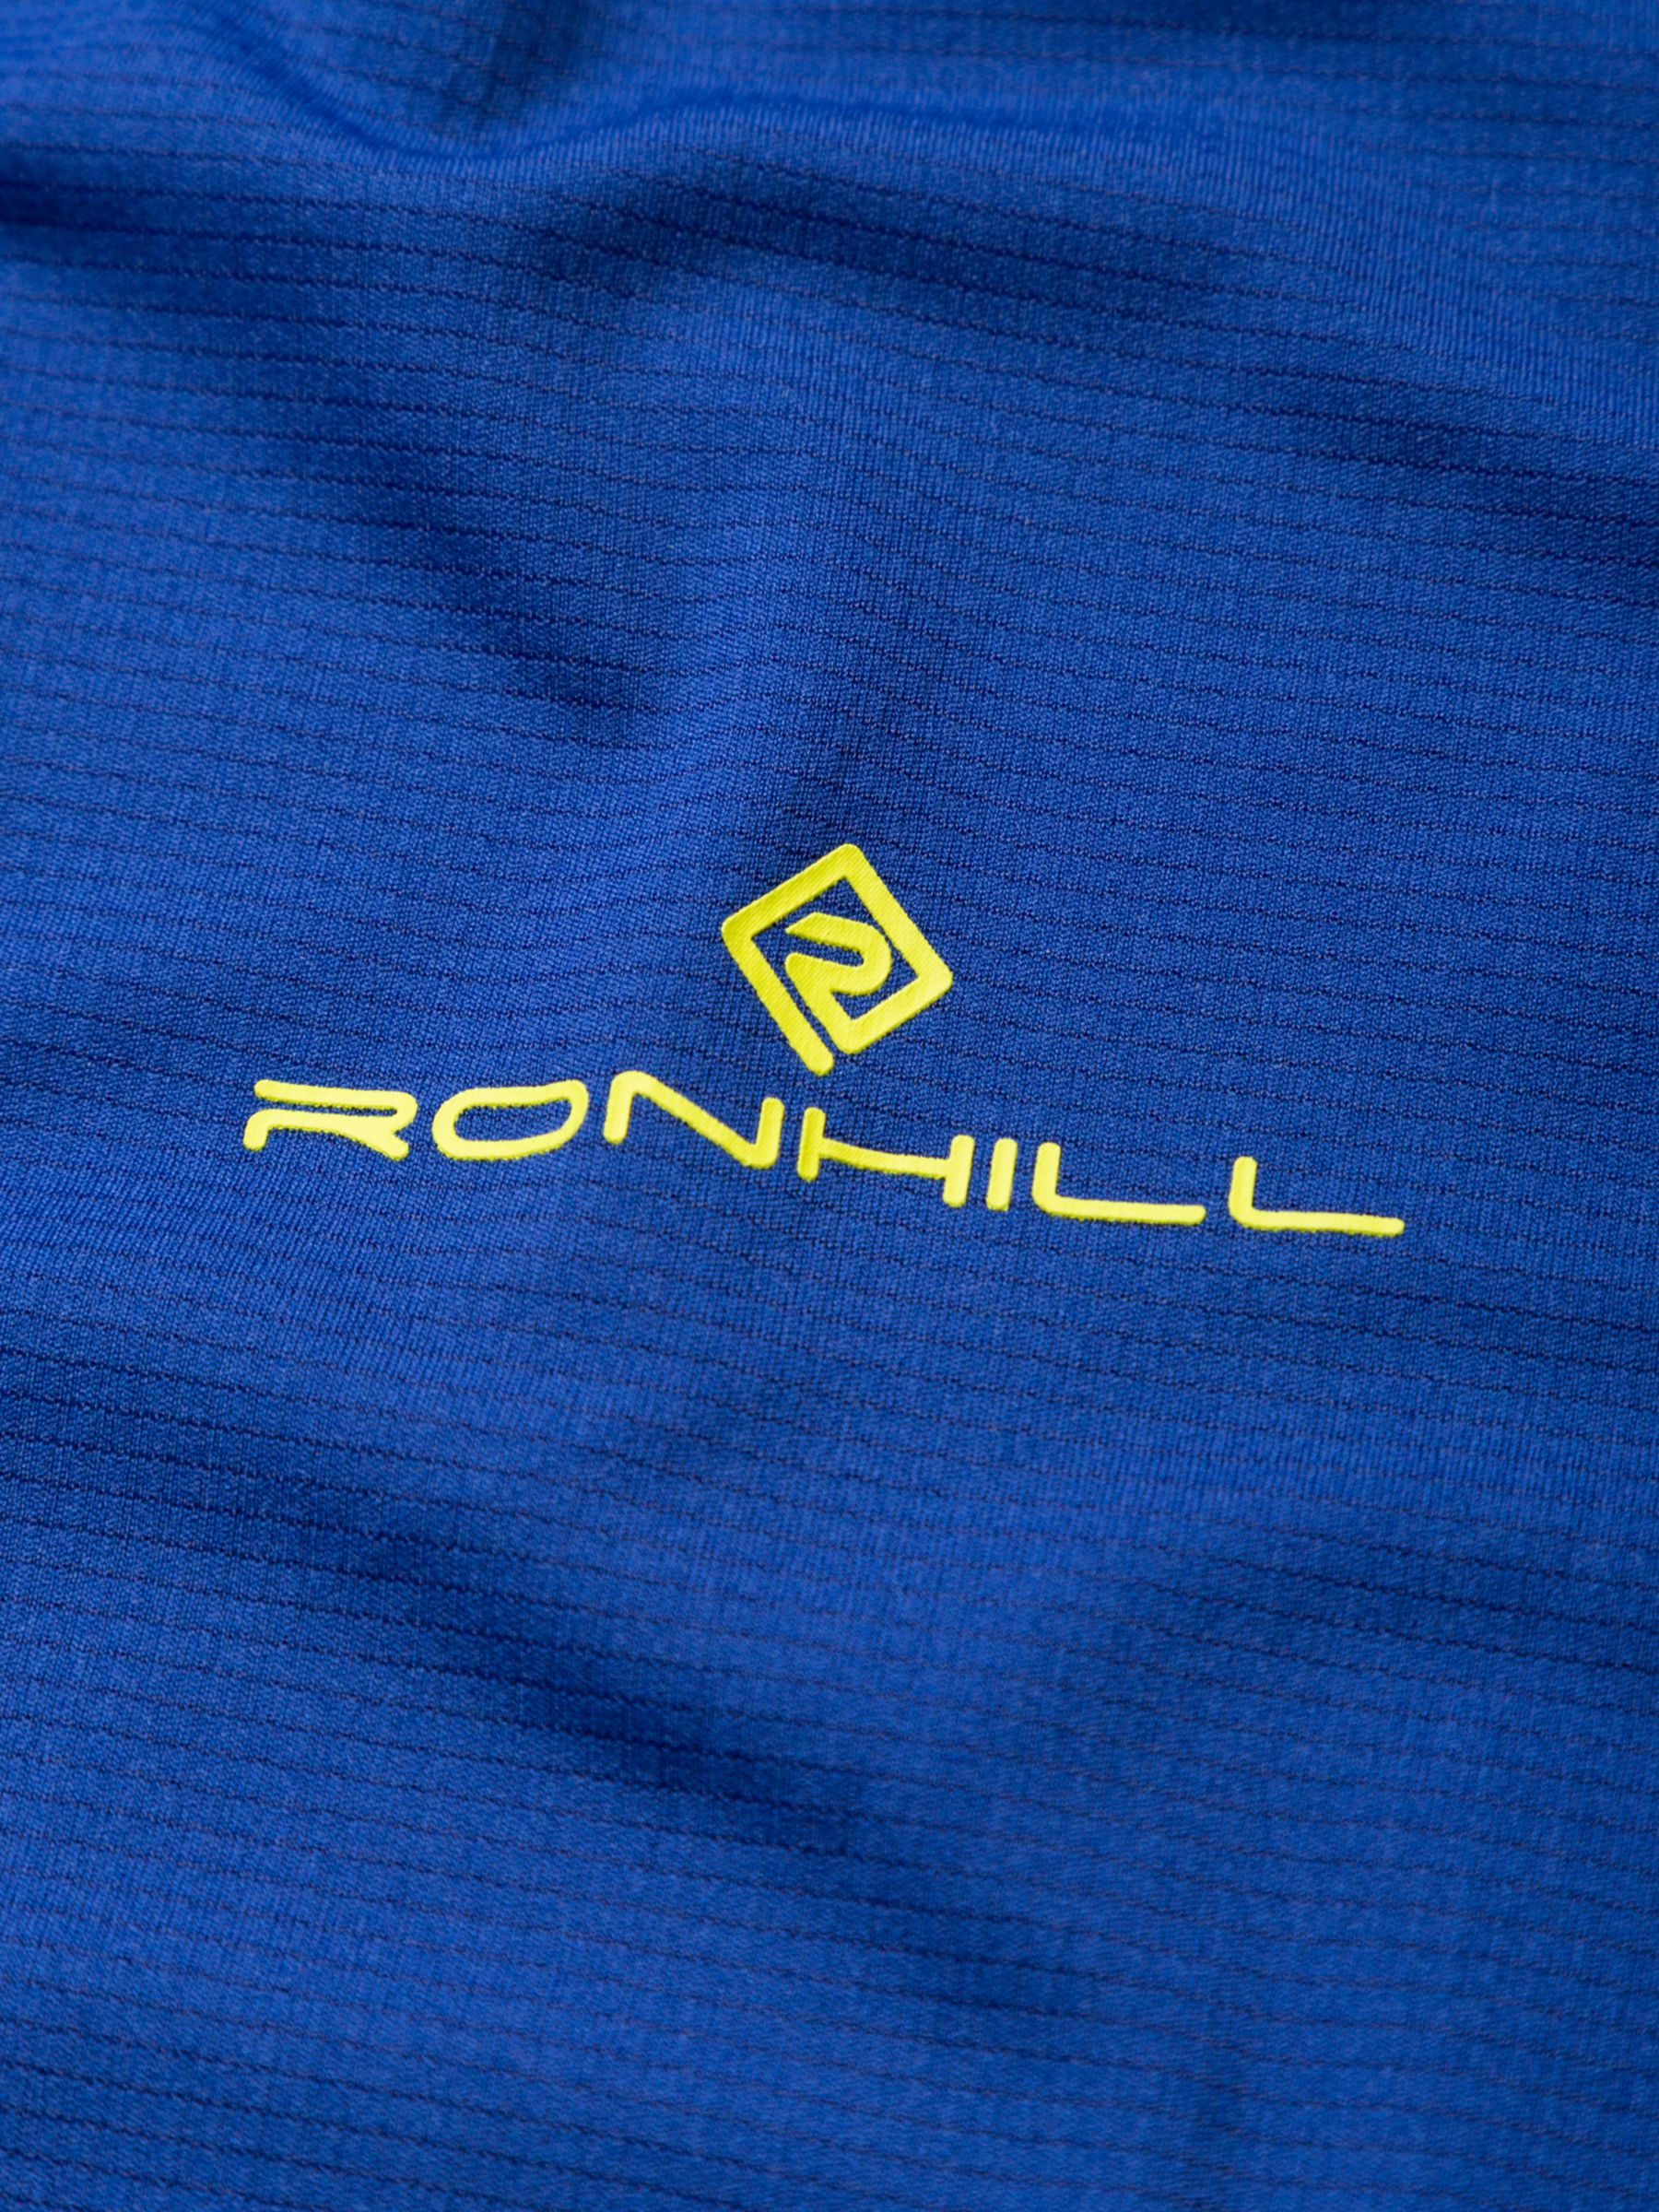 Ronhill Mesh Race Day Running Top, Blue Ocean, L